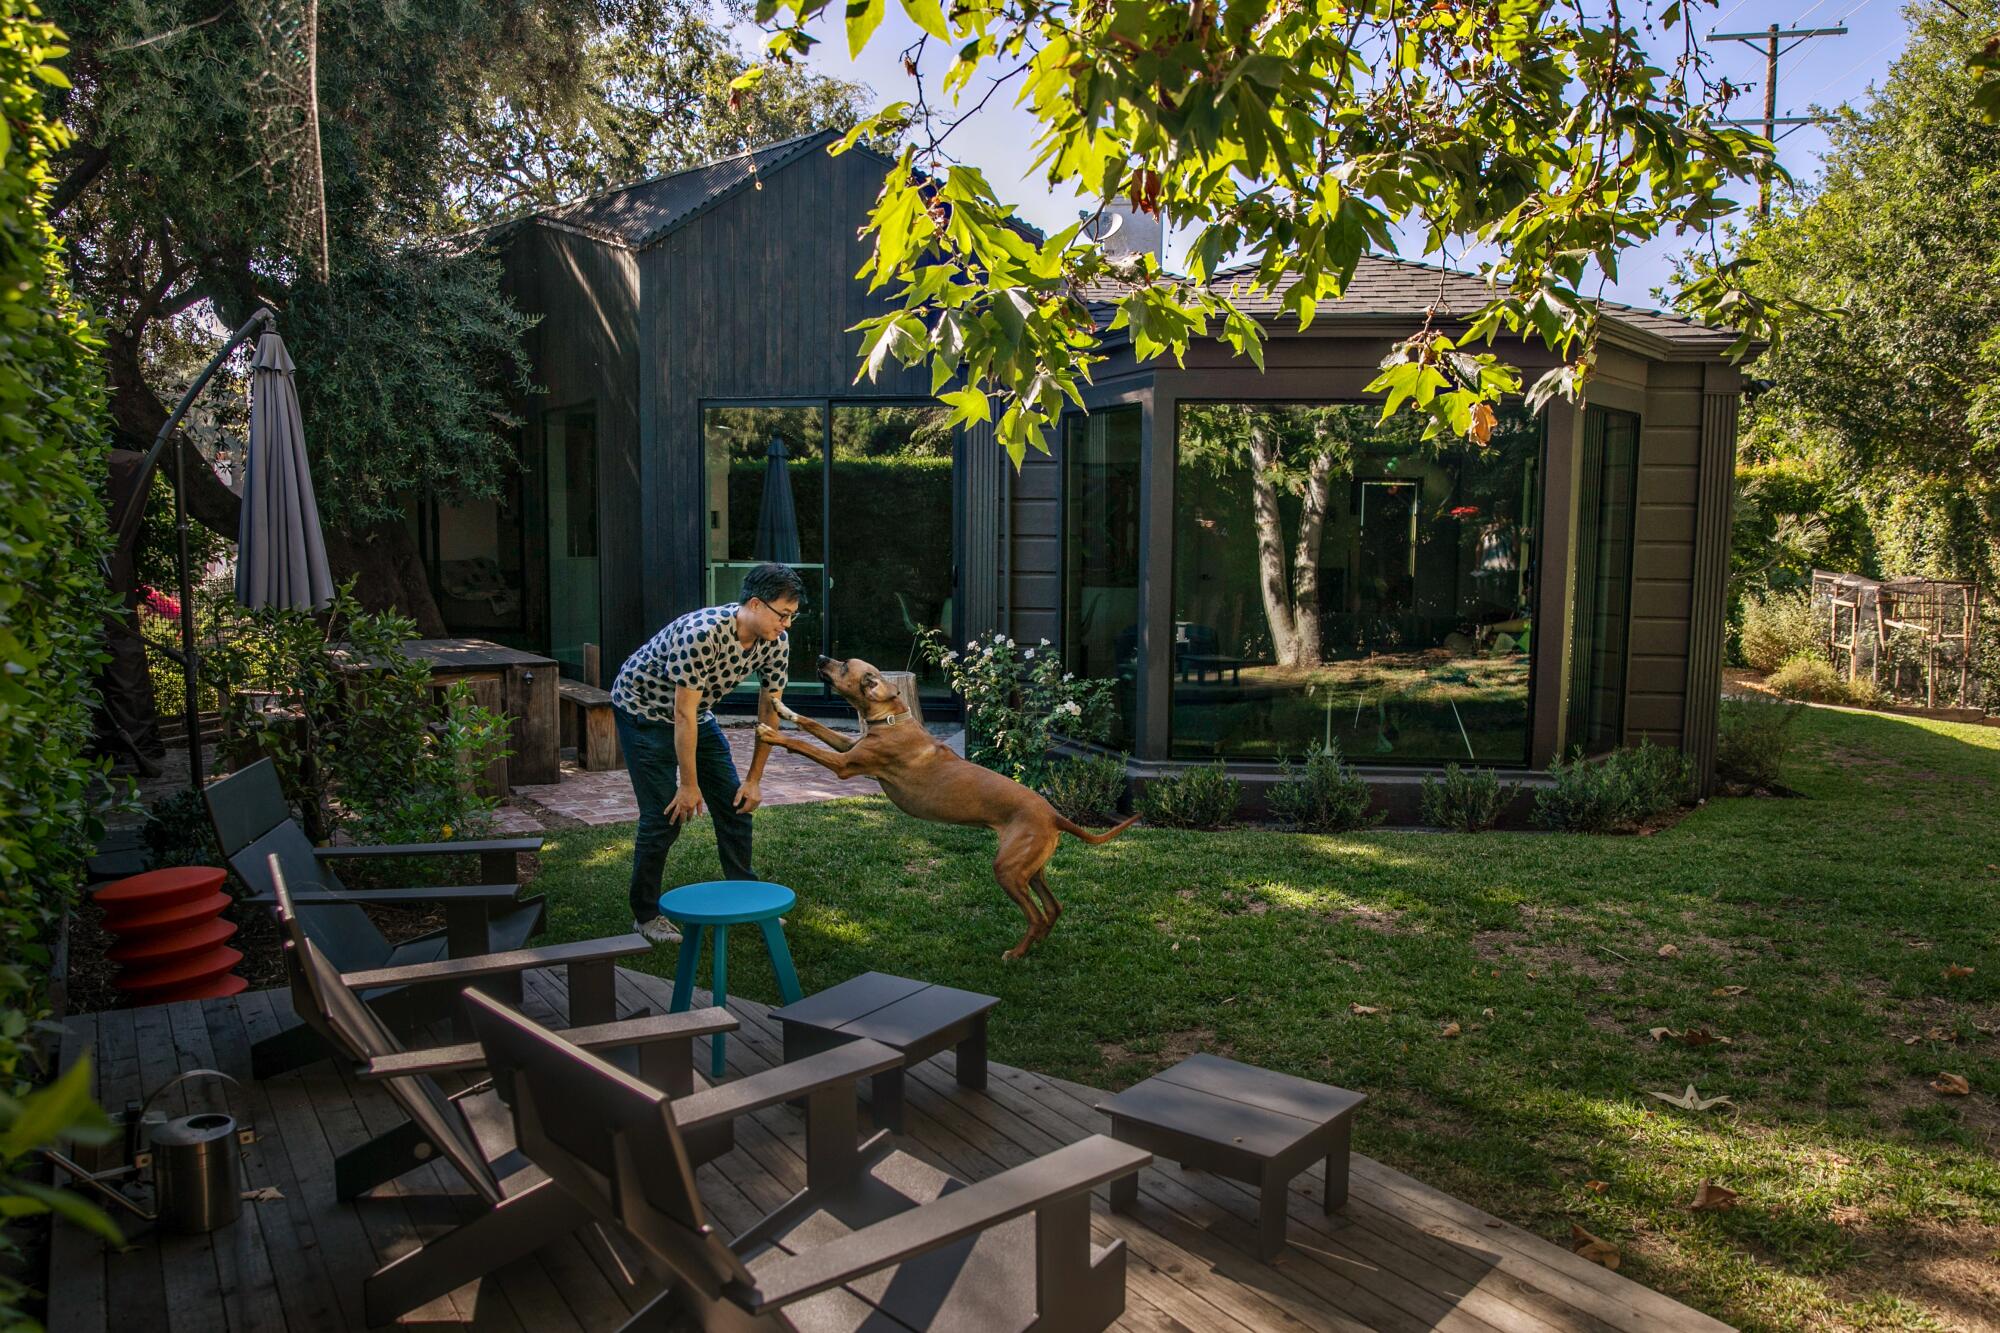 Un hombre juega con un perro en un patio trasero.